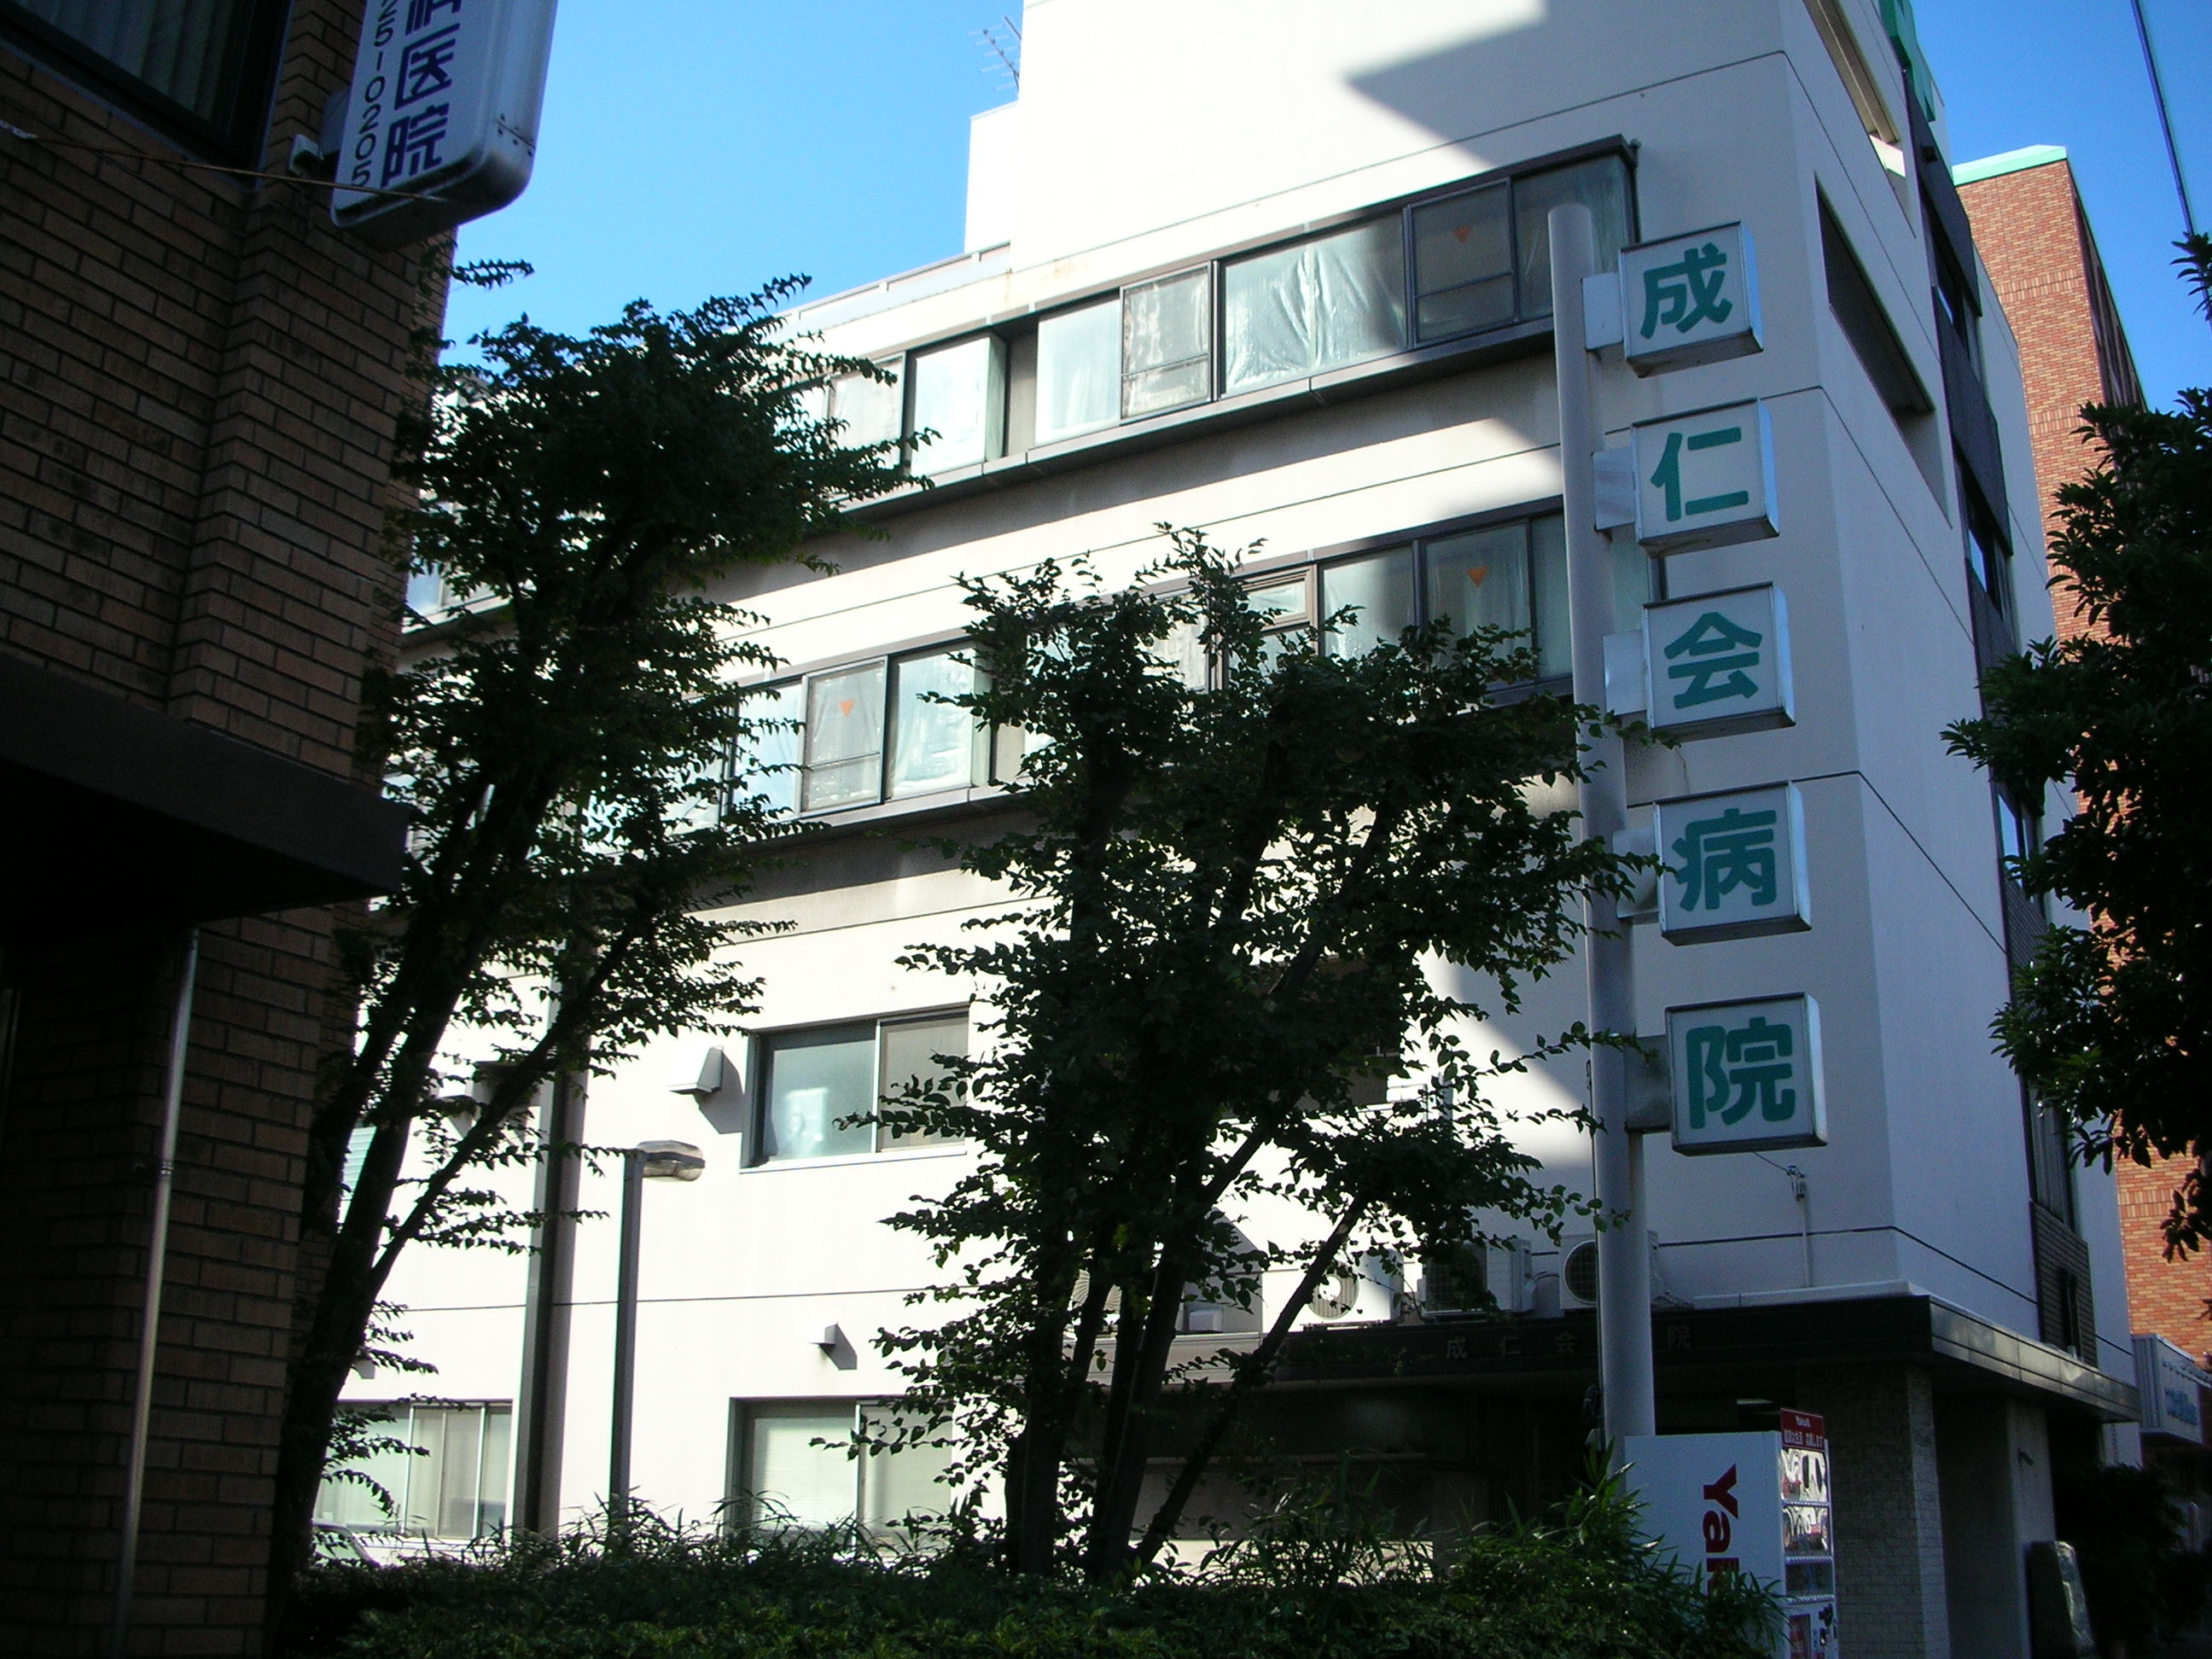 Hospital. Shigehito Board Hospital (hospital) to 350m